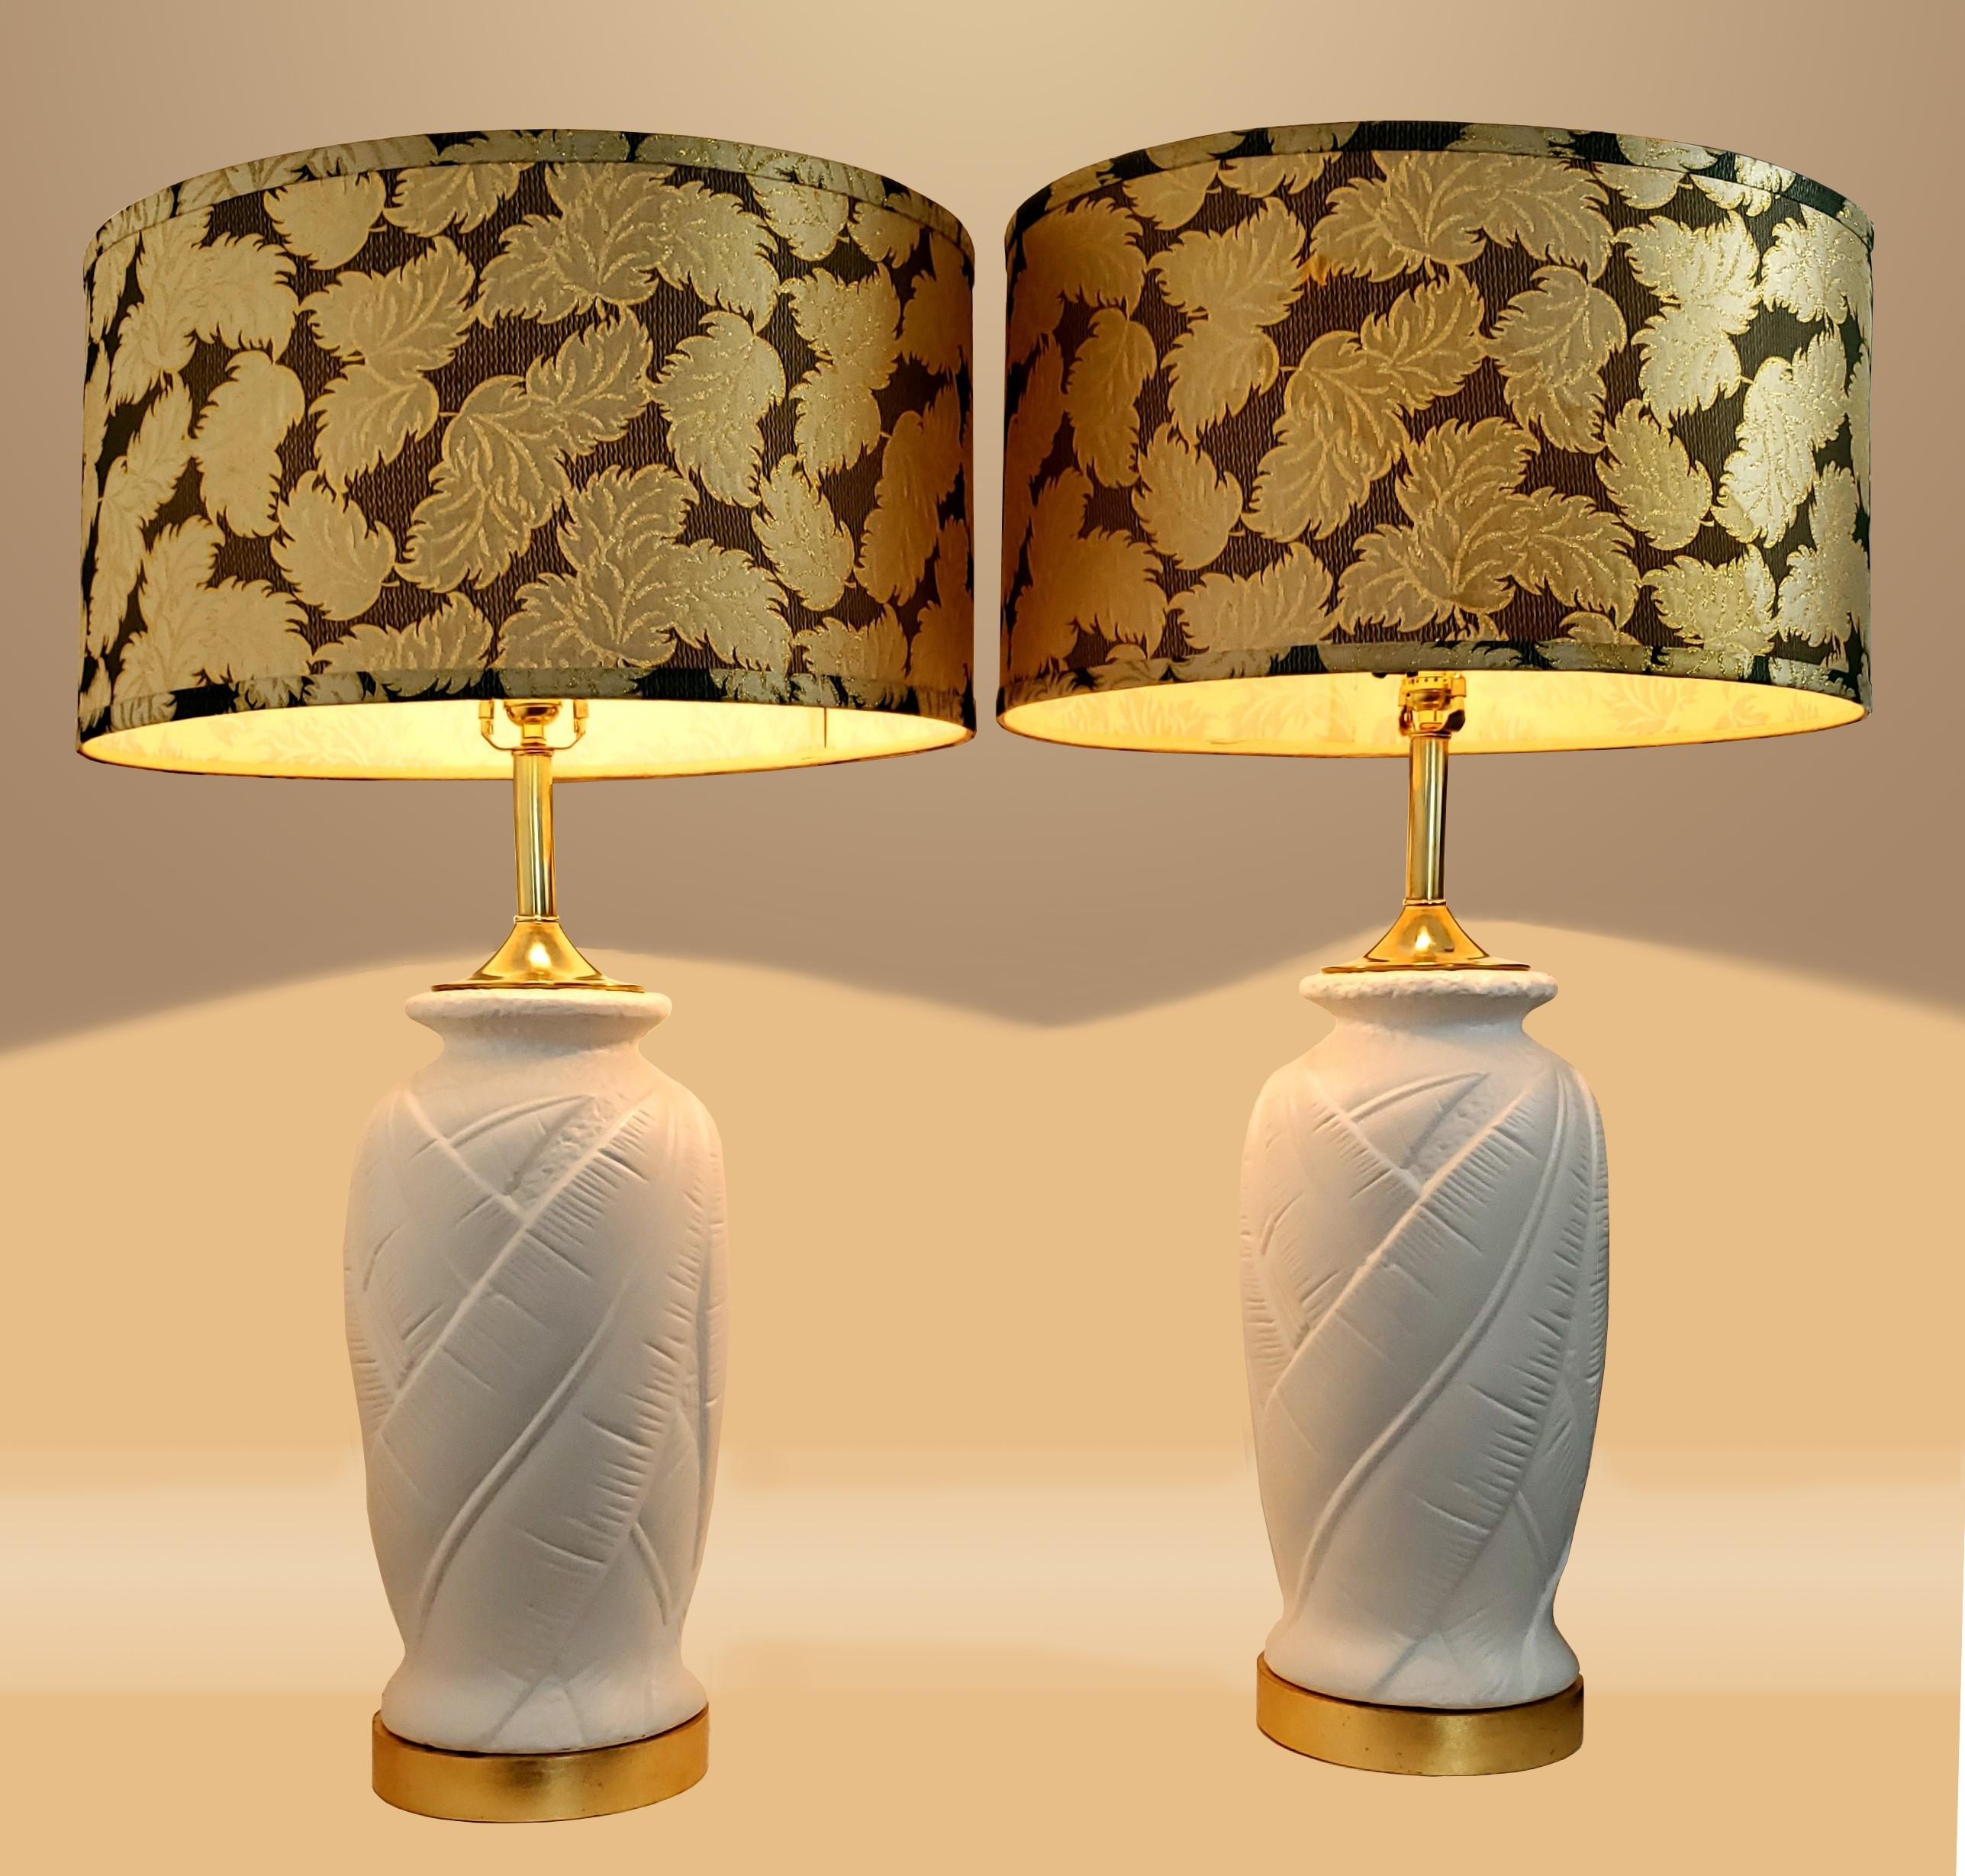 Paire de lampes à feuilles de palmier en plâtre blanc restaurées avec des abat-jours décoratifs vintage, vers 1980. Ces lampes ont été entièrement démontées, apprêtées par des professionnels et peintes en blanc avec de nouvelles feuilles d'or sur